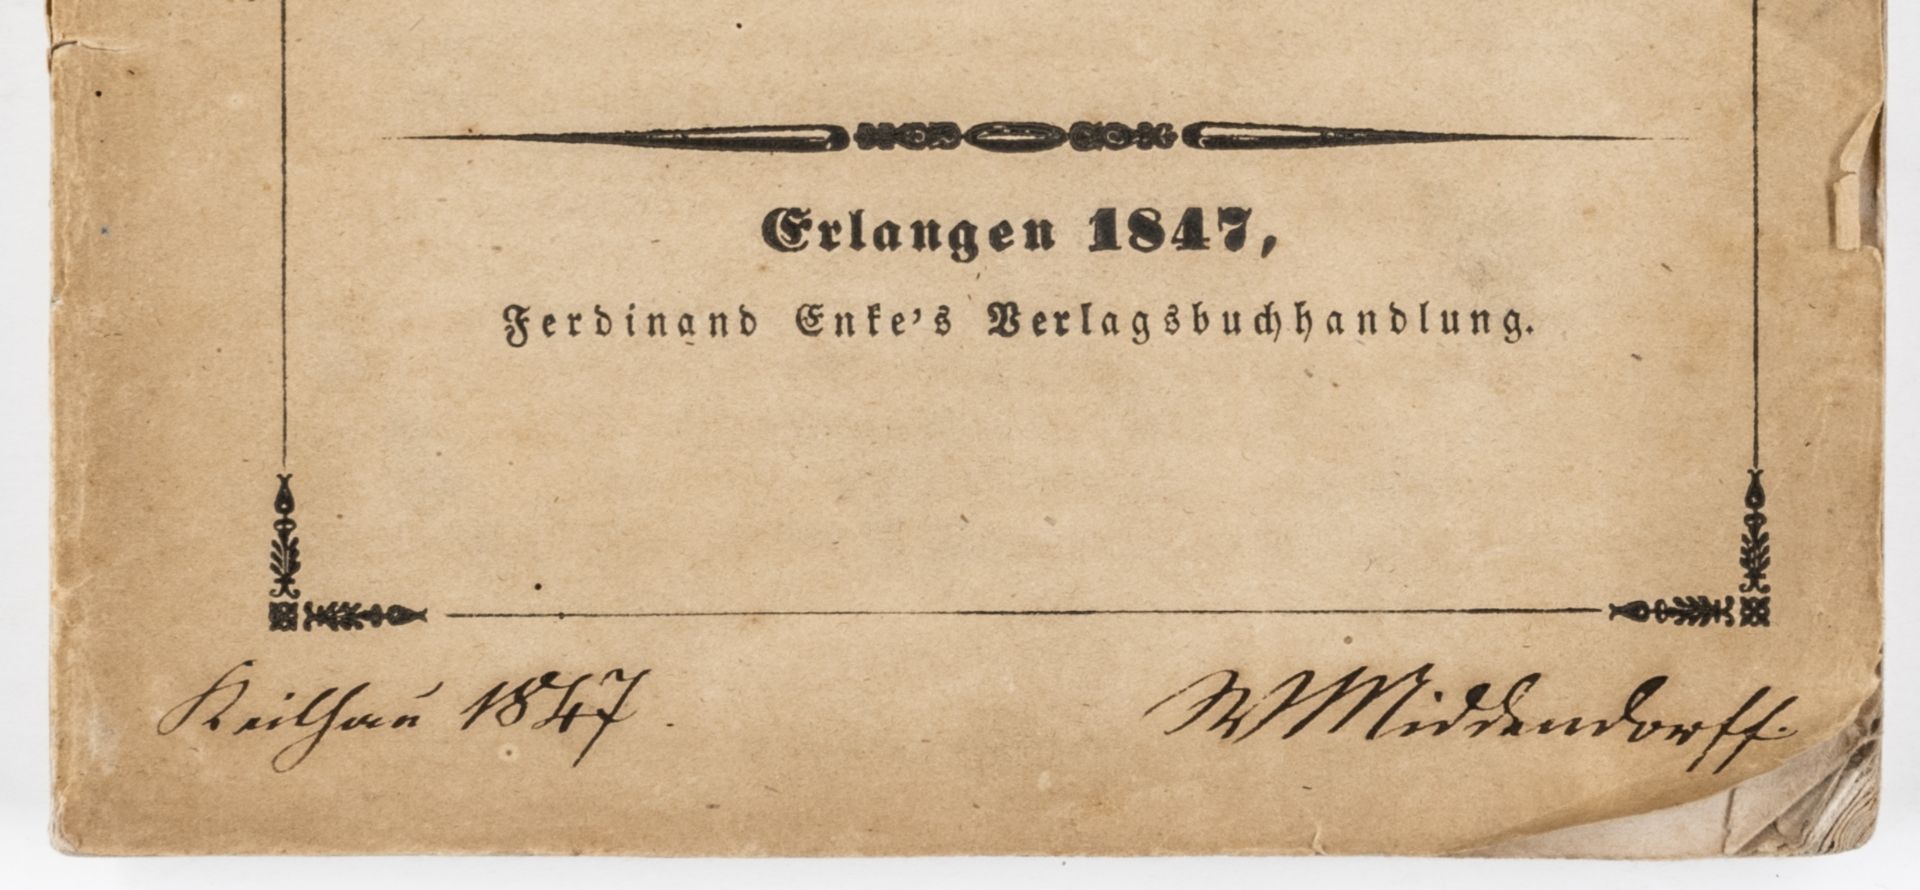 Fröbel, Wilhelm - - Middendorff, - Image 4 of 4